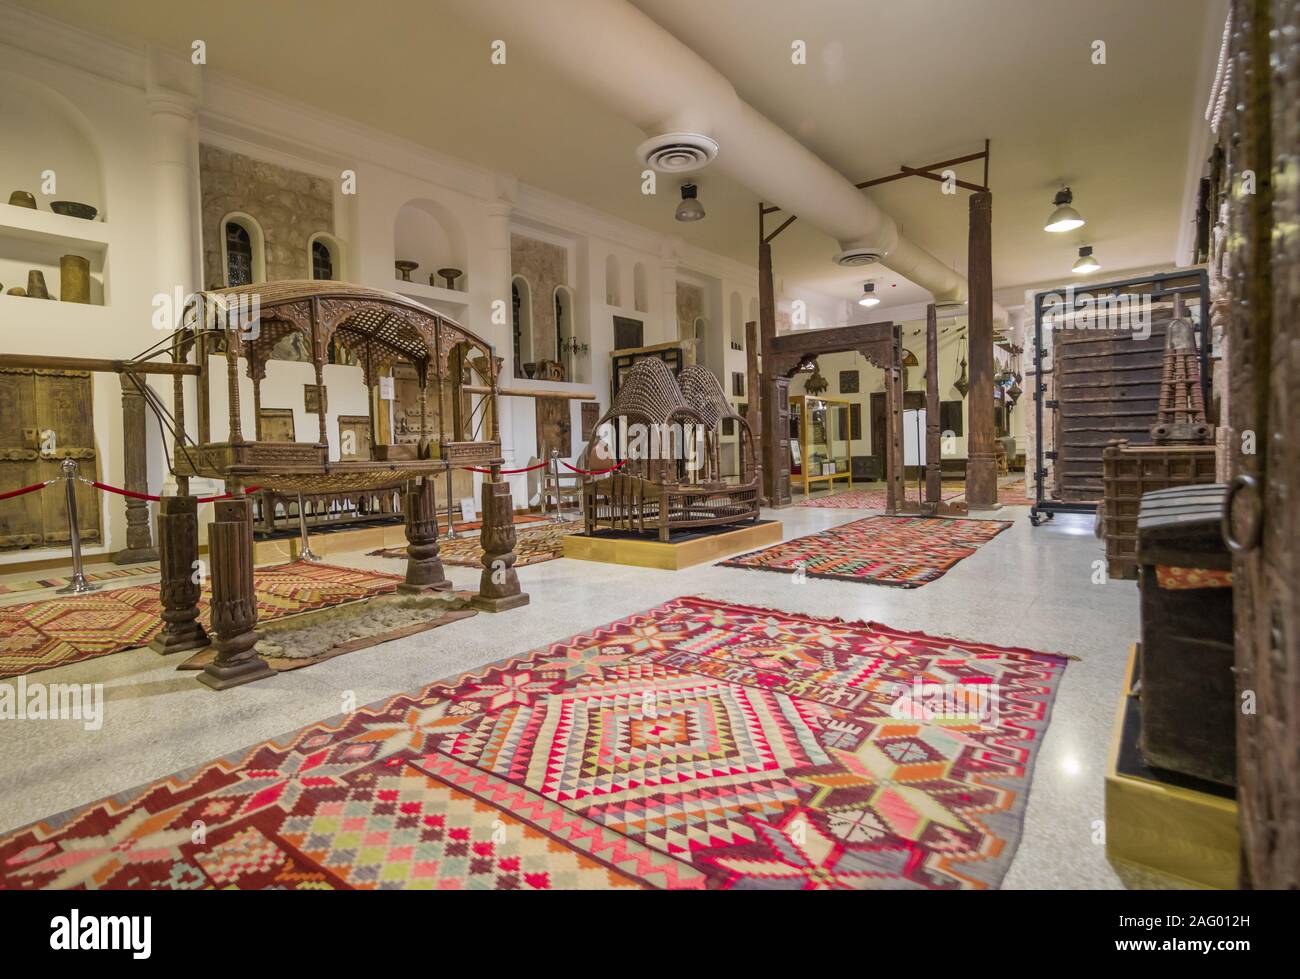 Umfasst eine Fläche von 530.000 m², der Sheikh Faisal Bin Qassim Al Thani Museum stellt die umfassendste Sammlung von Artefakten in Katar. Stockfoto